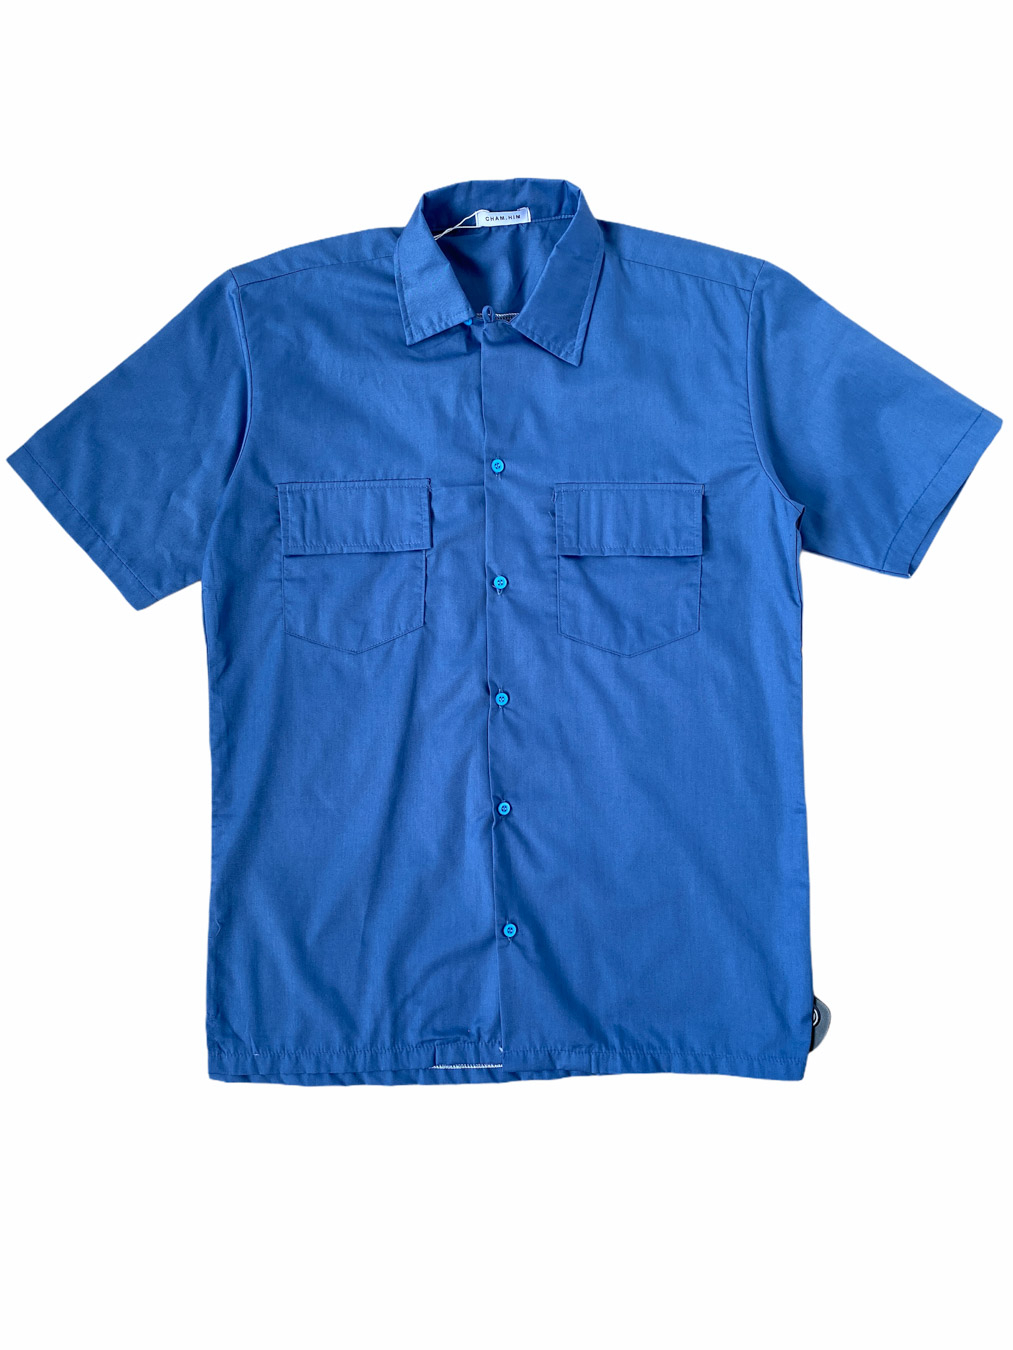 Benly Shirt  (Blue)